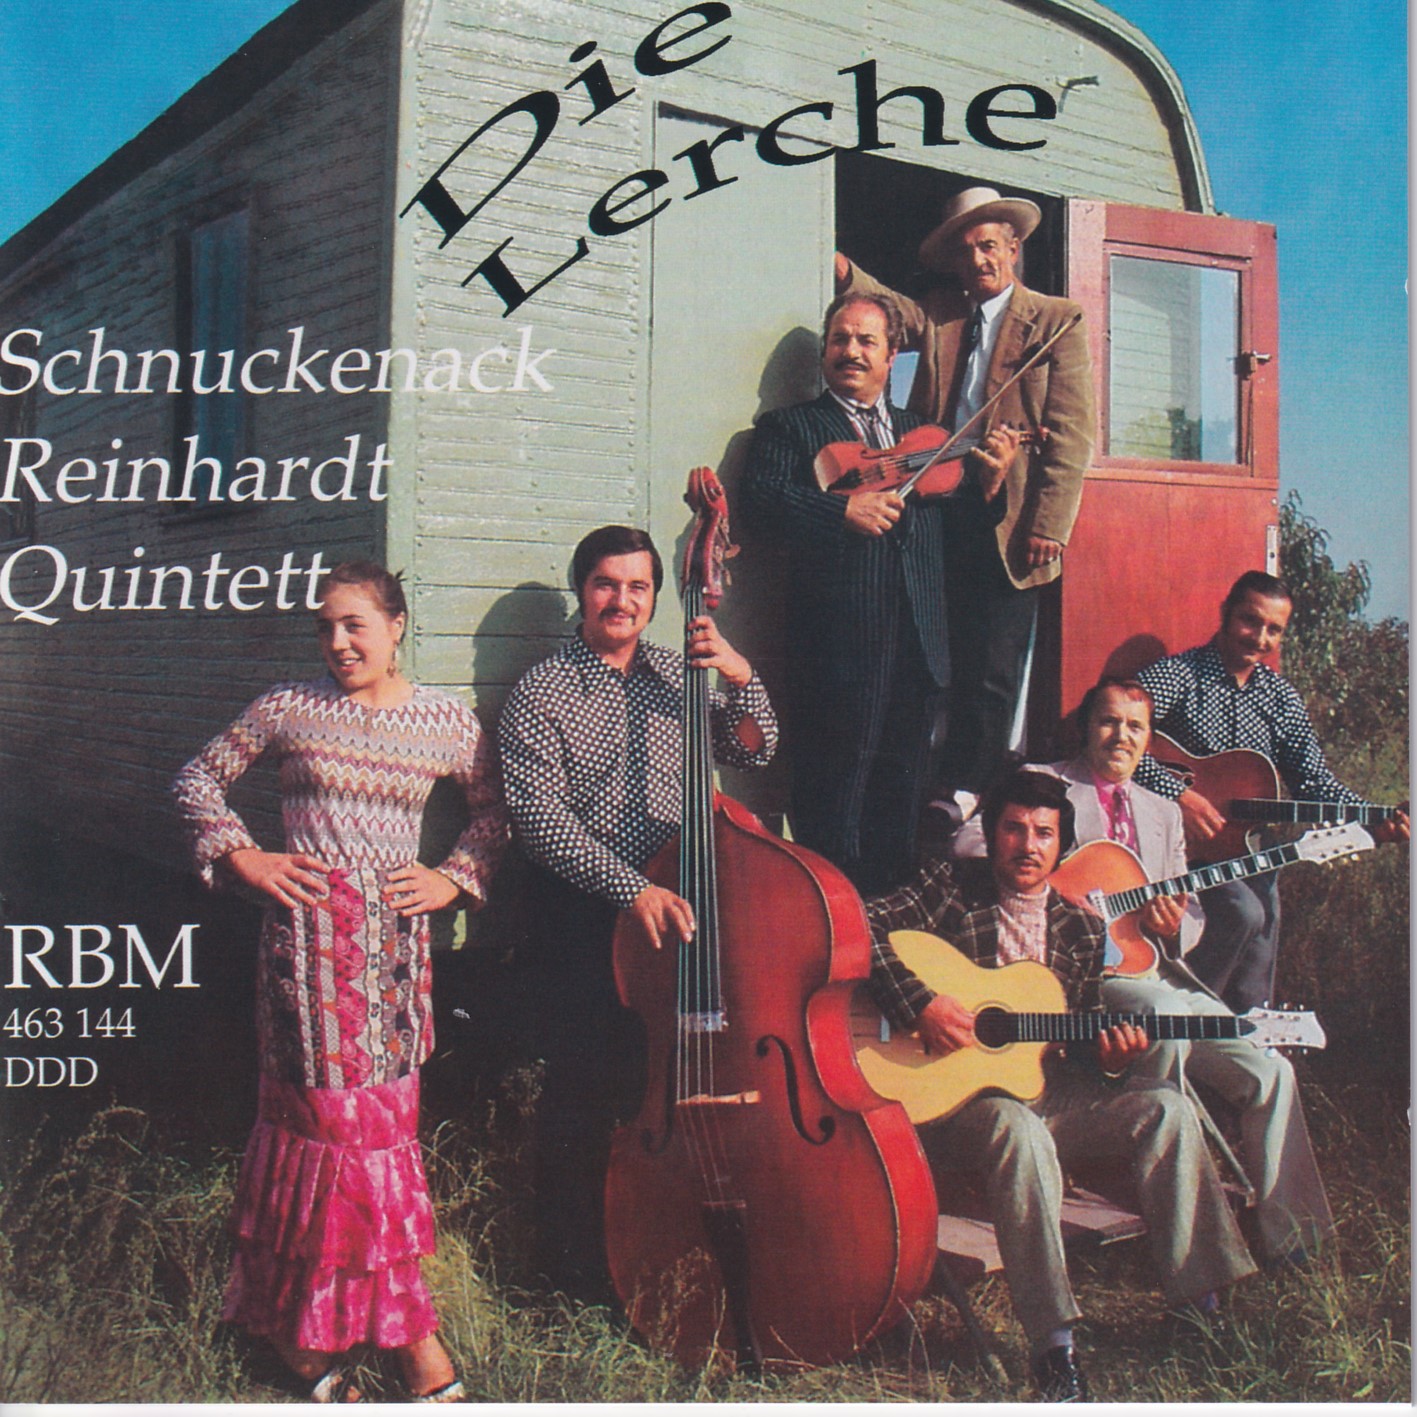 Schnuckenack Reinhardt Quintett - „Die Lerche“